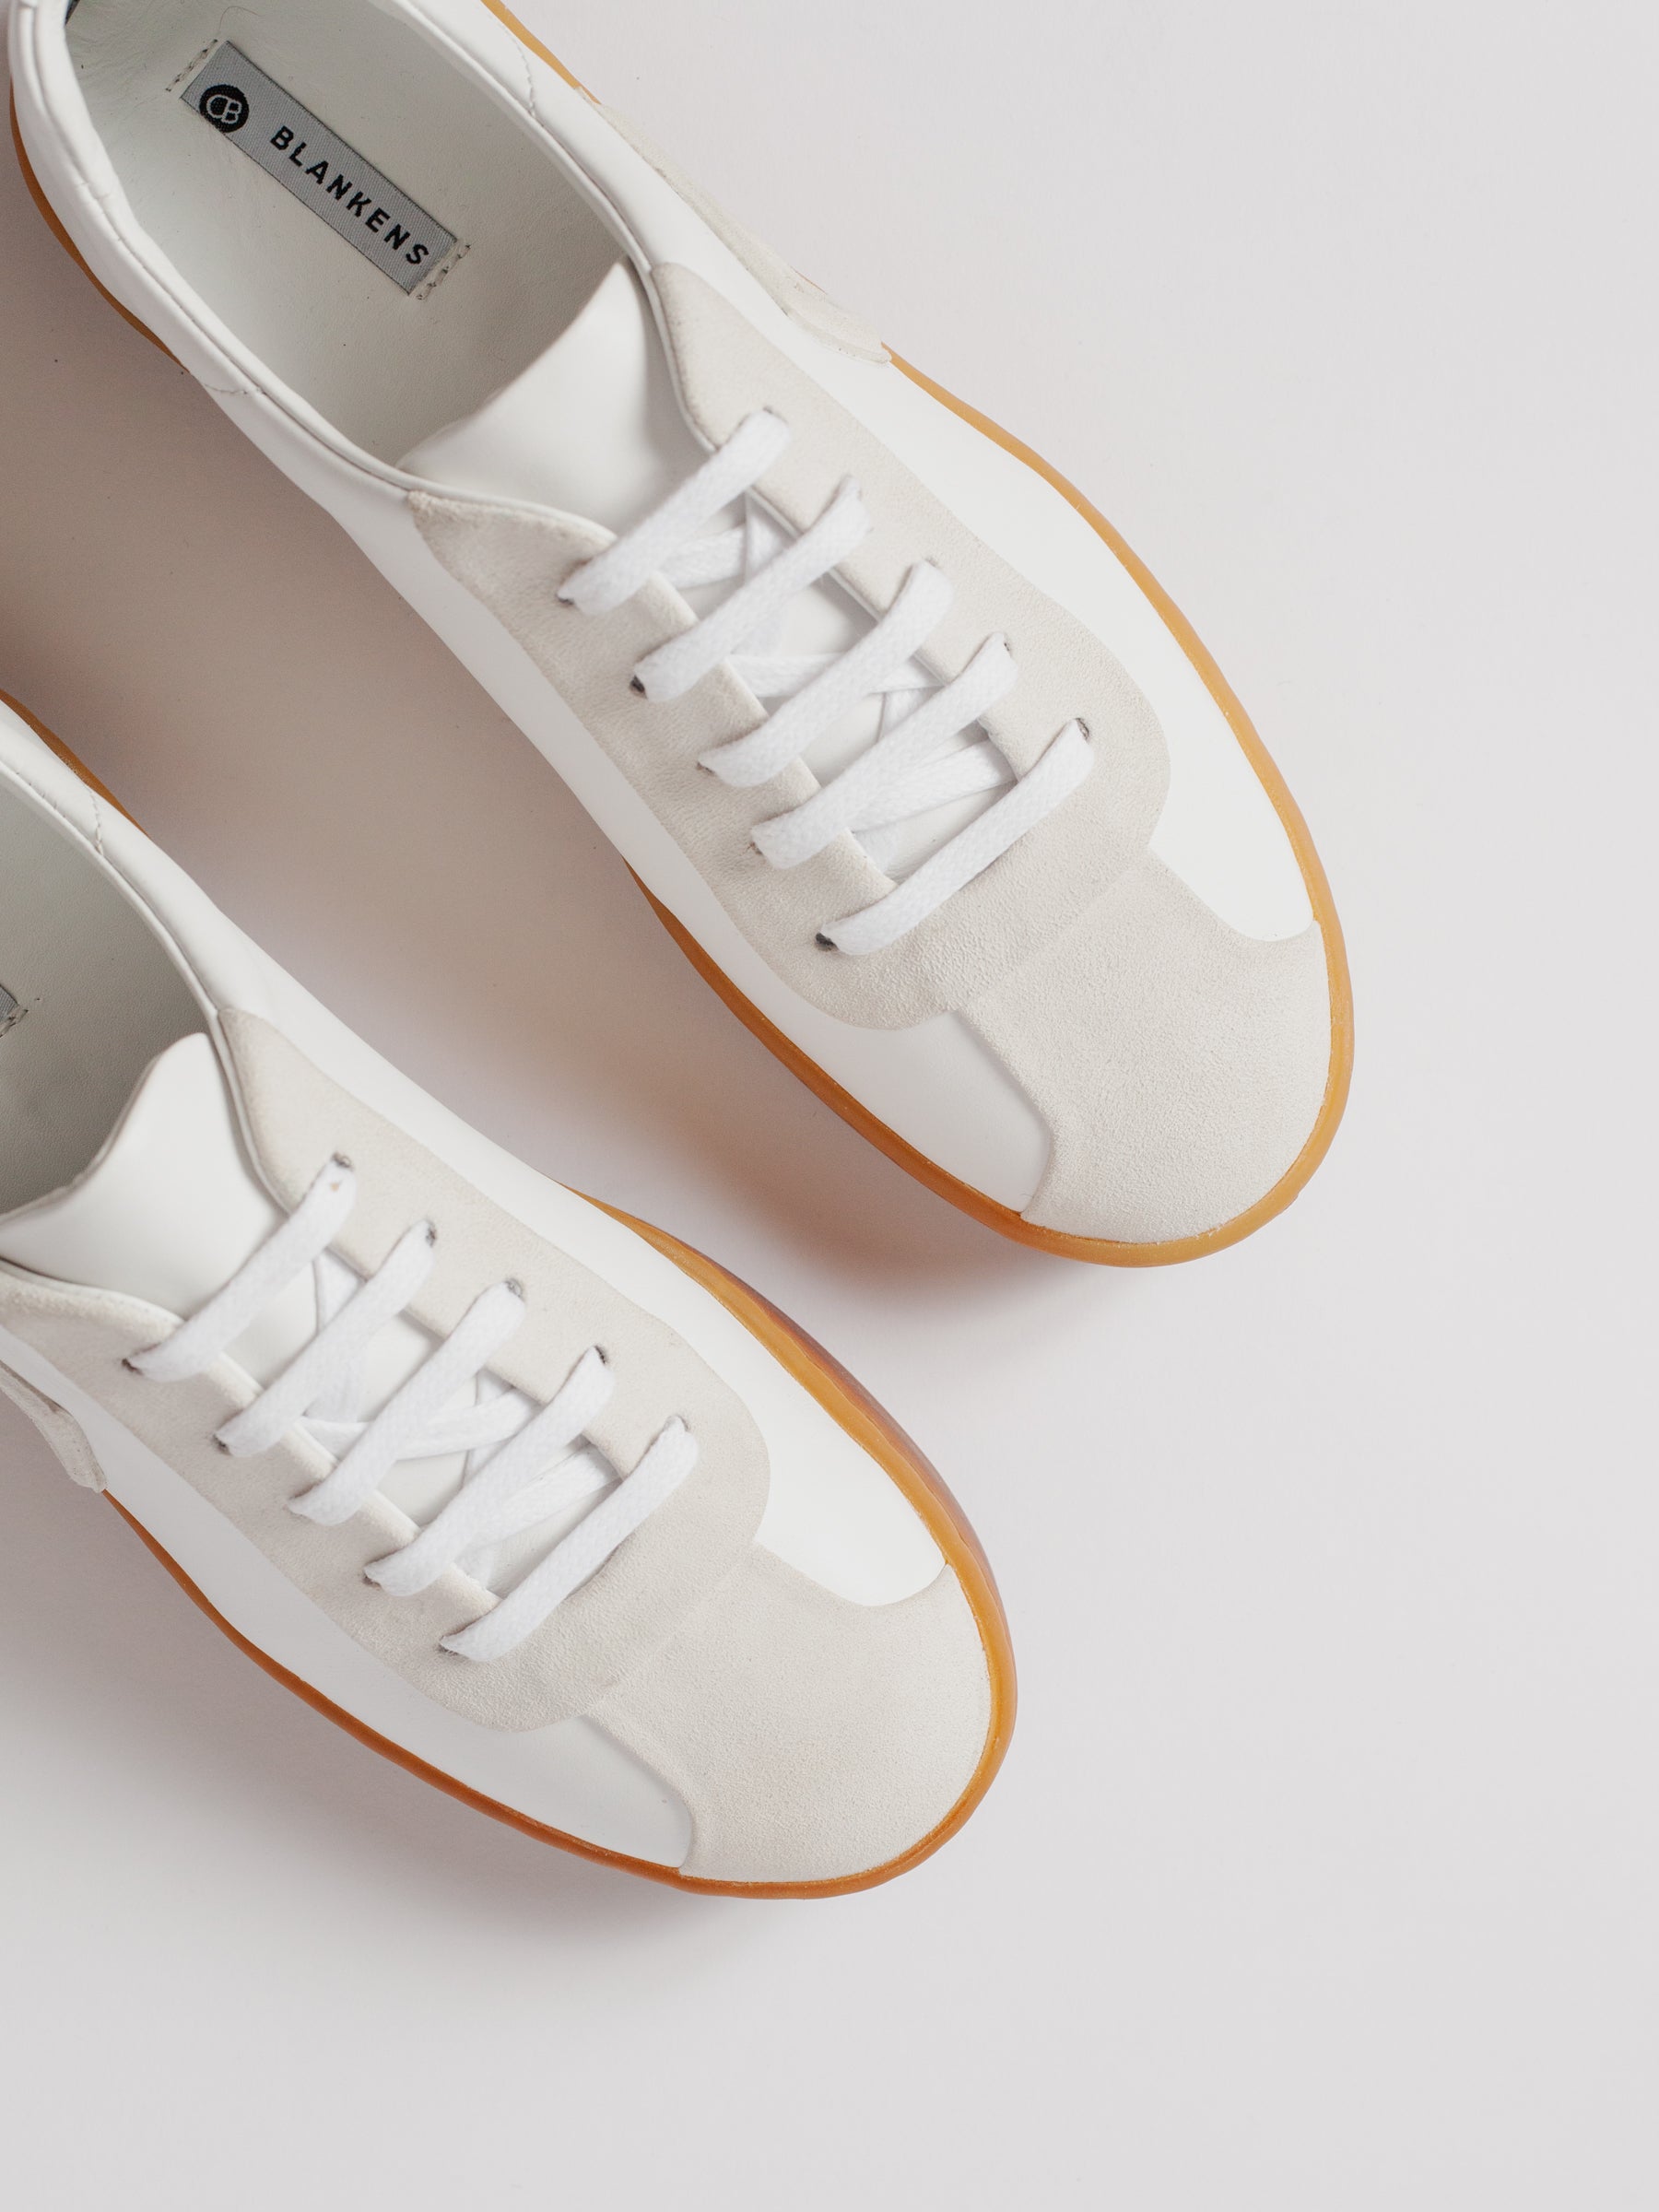 Adidas Originals Blanc Gum Sole Sneakers In White | ModeSens